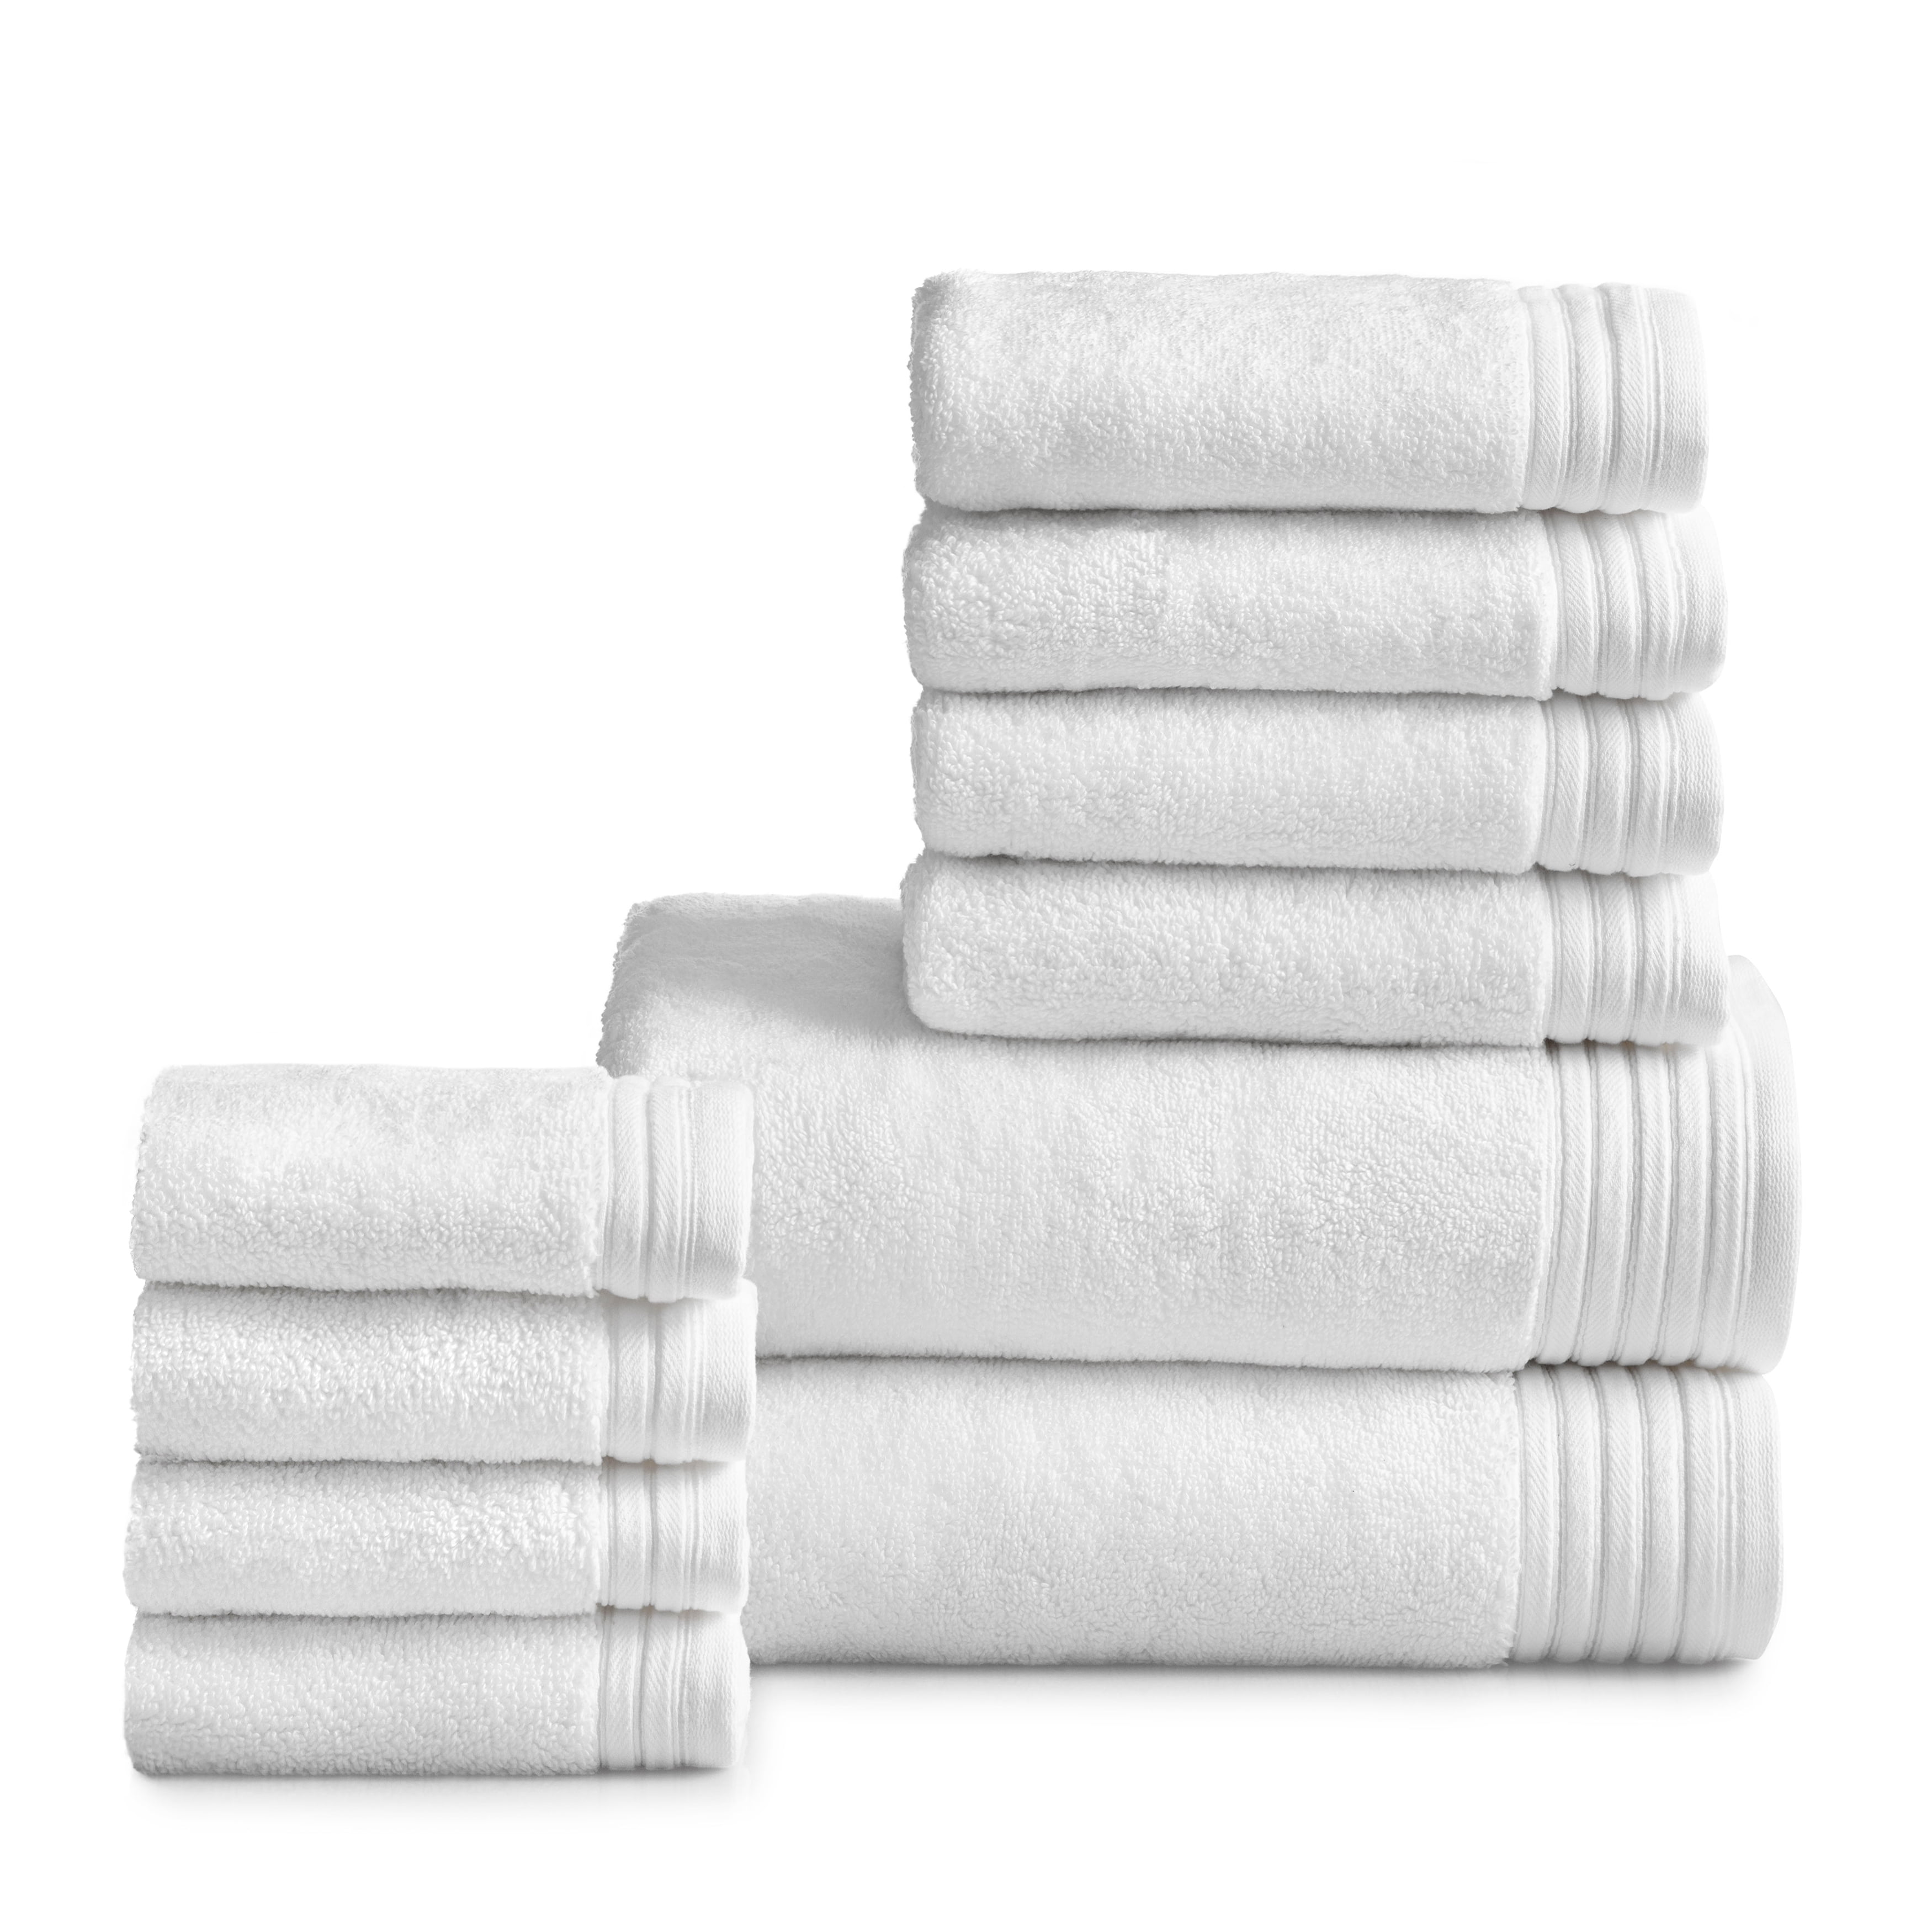 White 100% Egyptian Cotton 500gsm 9 Piece Towel Set